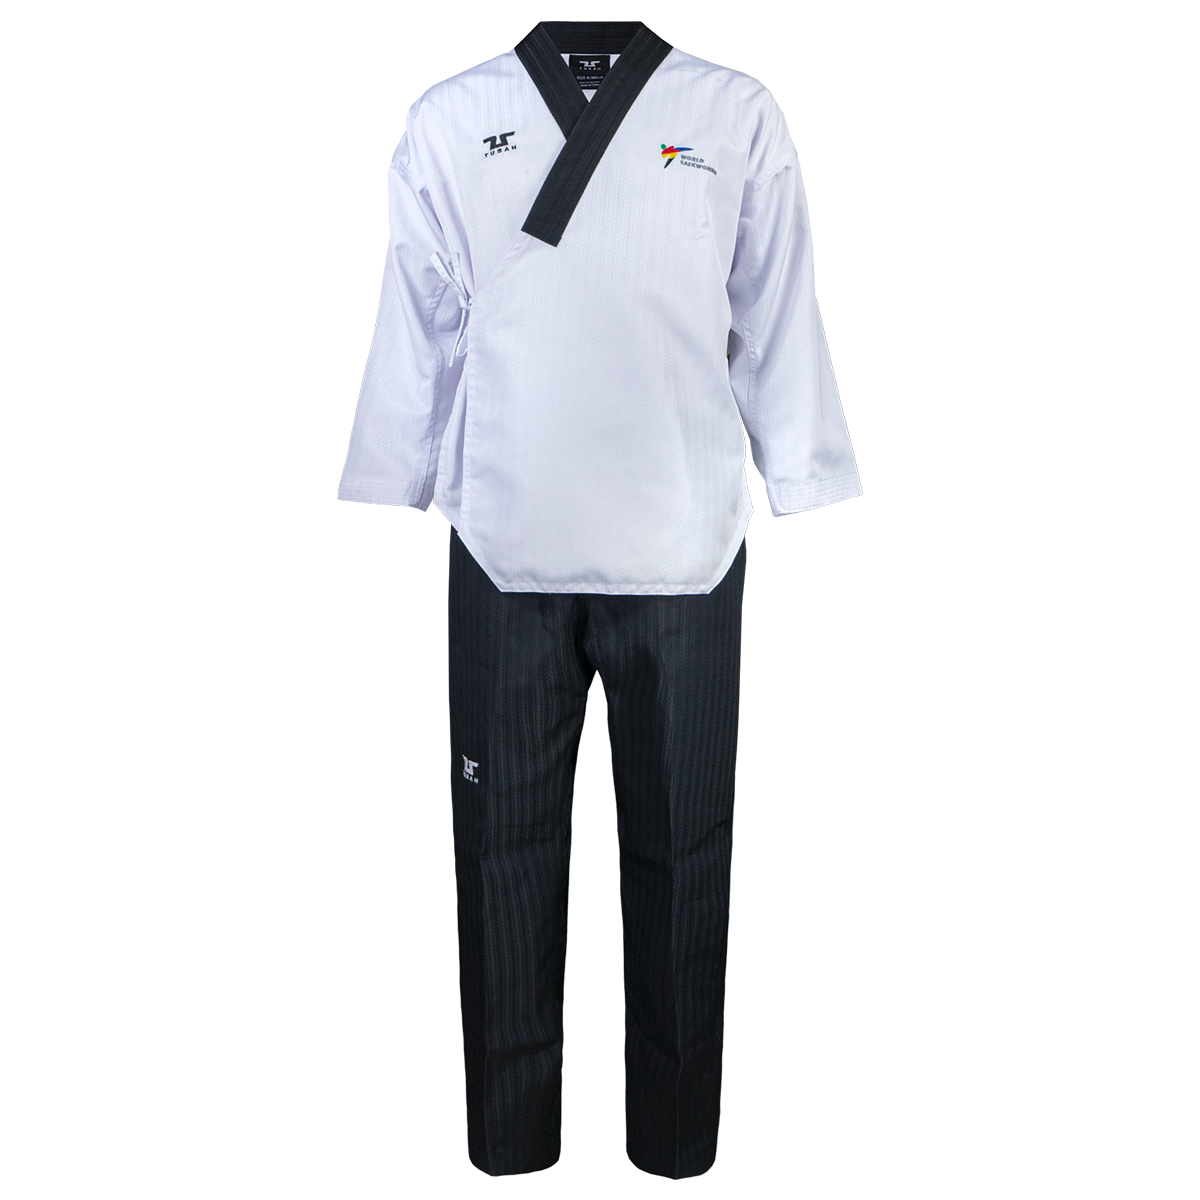 Terra Poomsae Uniform Junior / Senior